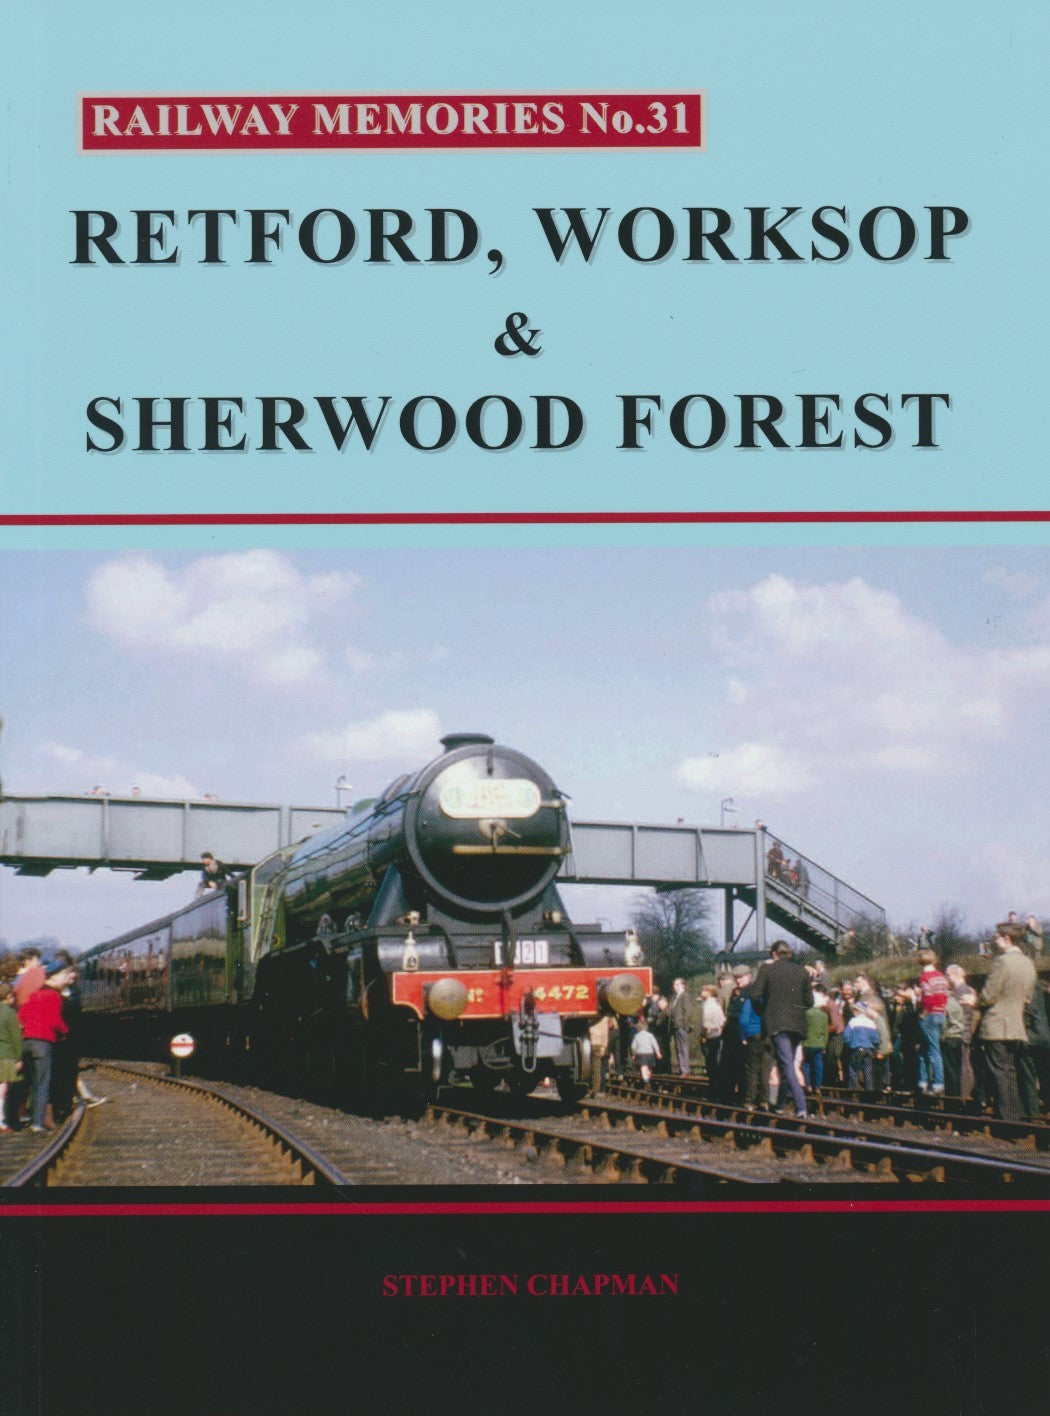 Railway Memories No. 31 - Retford, Worksop & Sherwood Forest